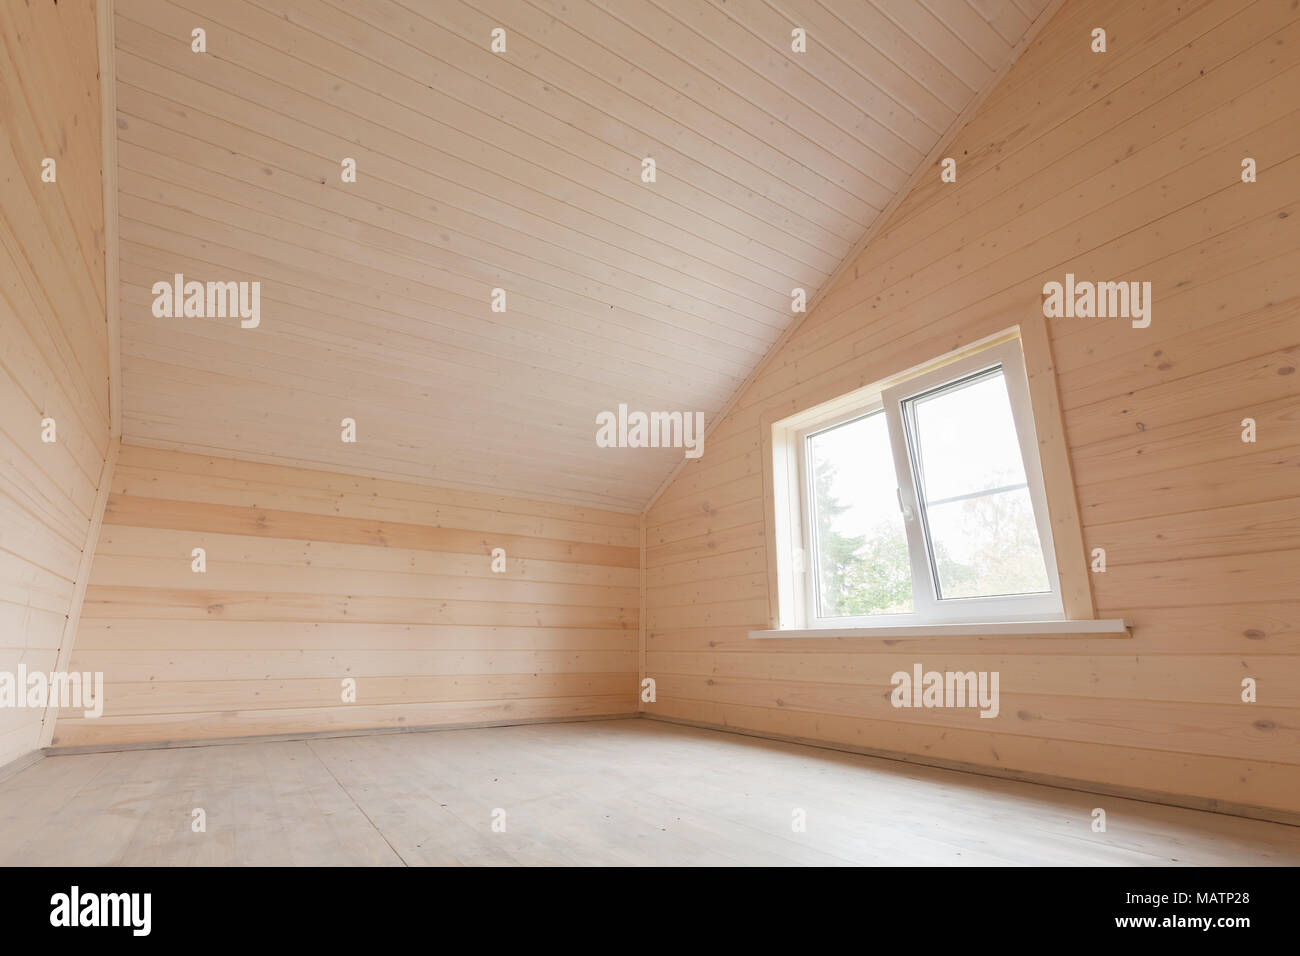 Maison en bois vide intérieur, chambre mansardée avec fenêtre Banque D'Images